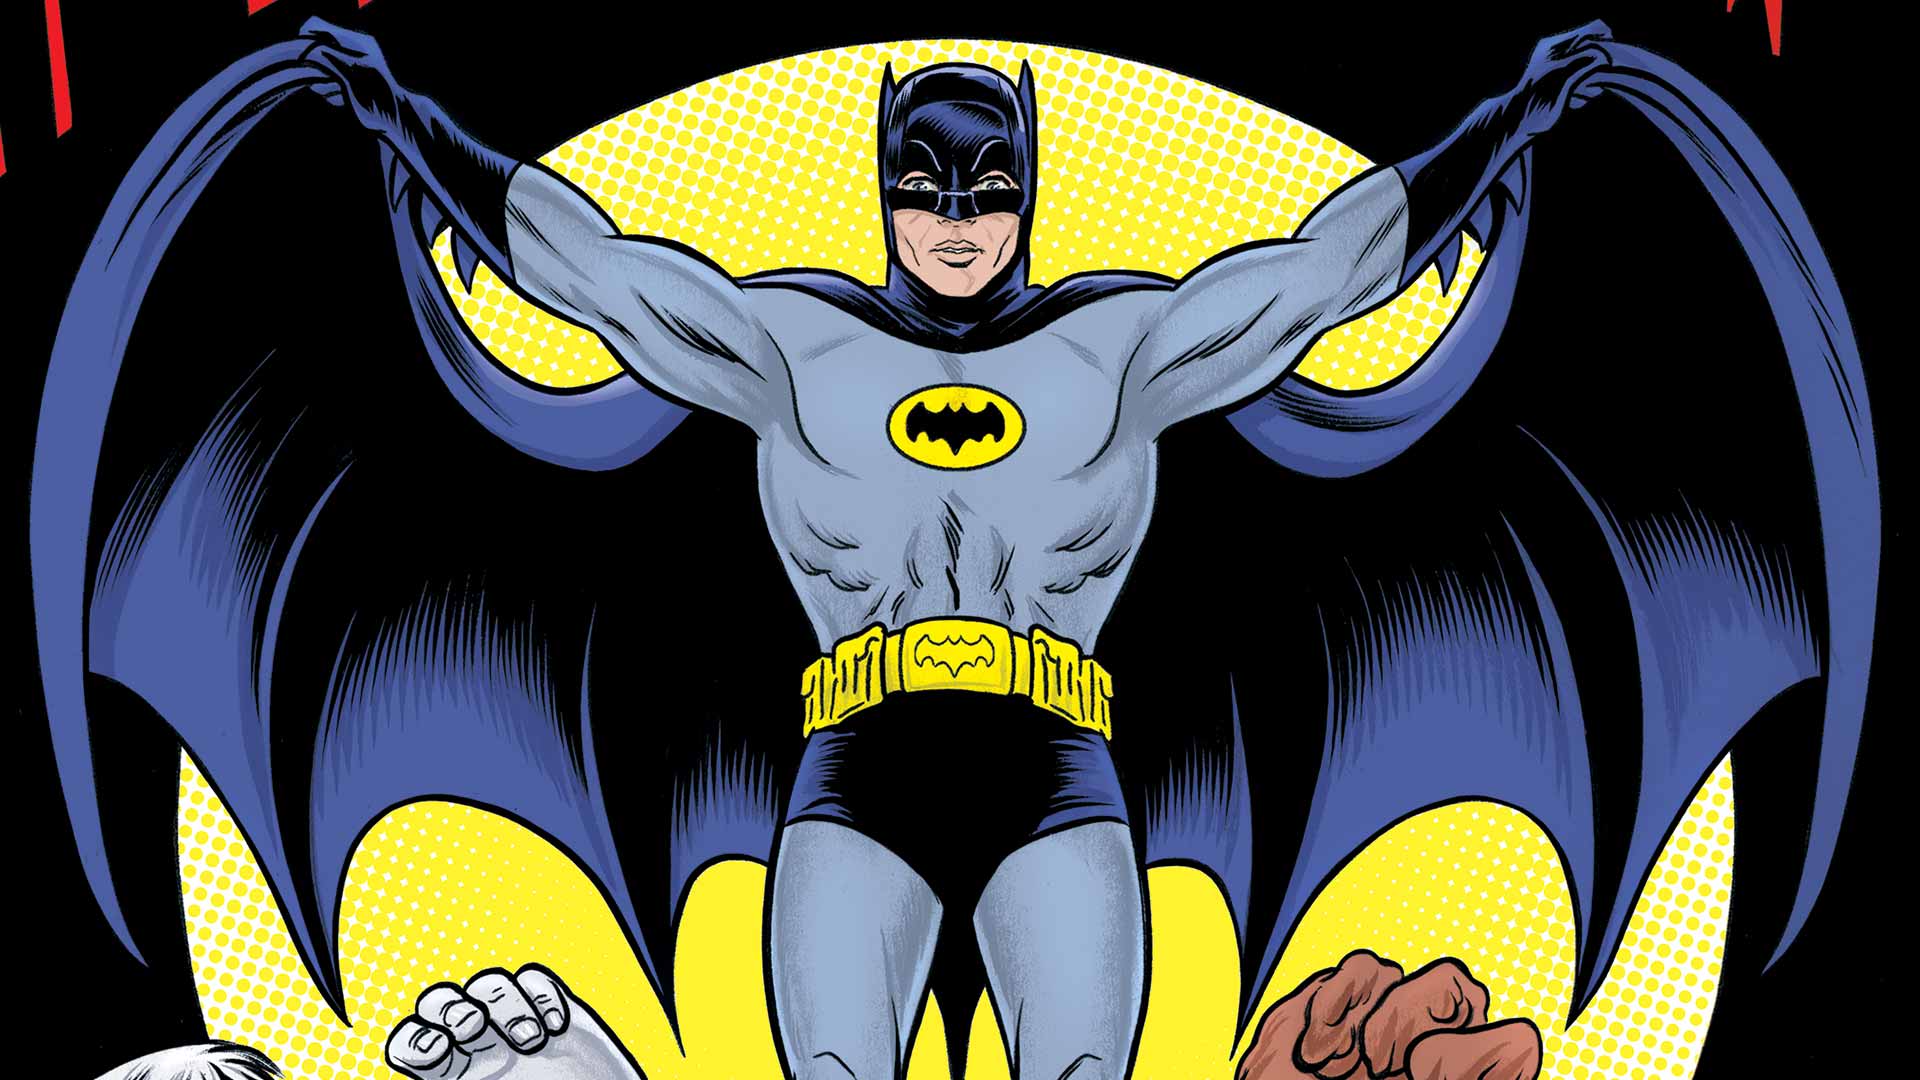 Batman '66 Backgrounds, Compatible - PC, Mobile, Gadgets| 1920x1080 px